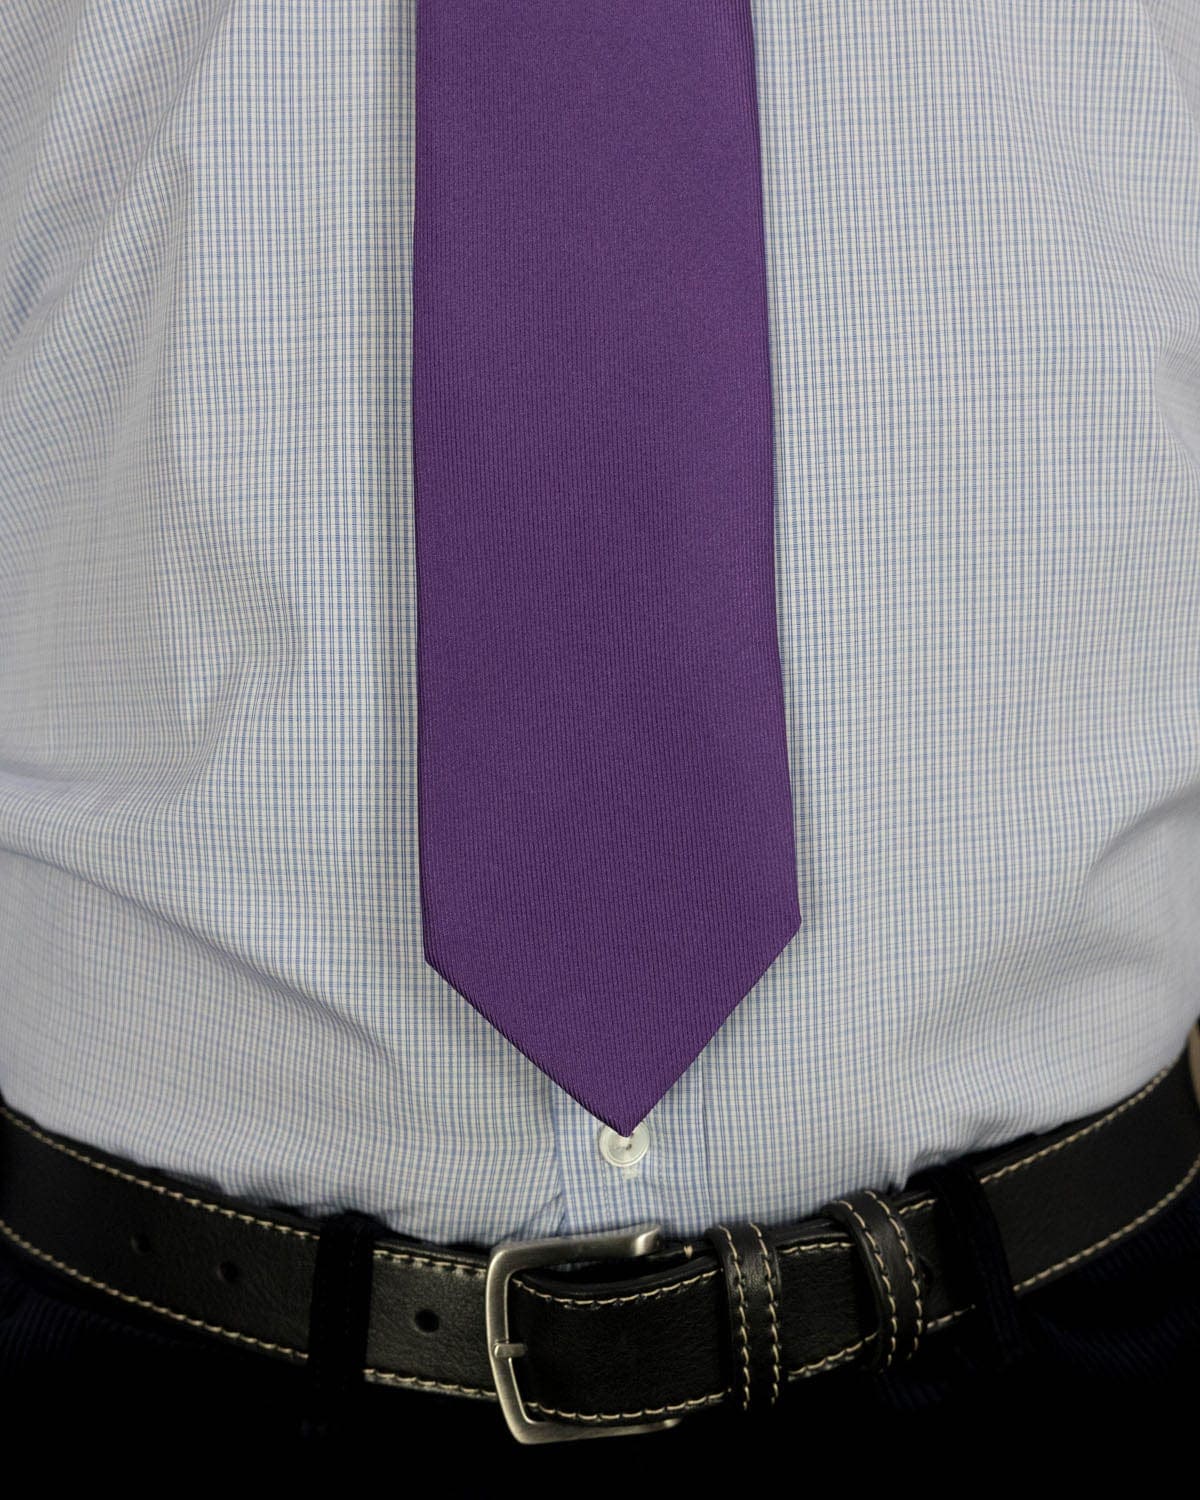 Plain Purple Printed Silk Tie